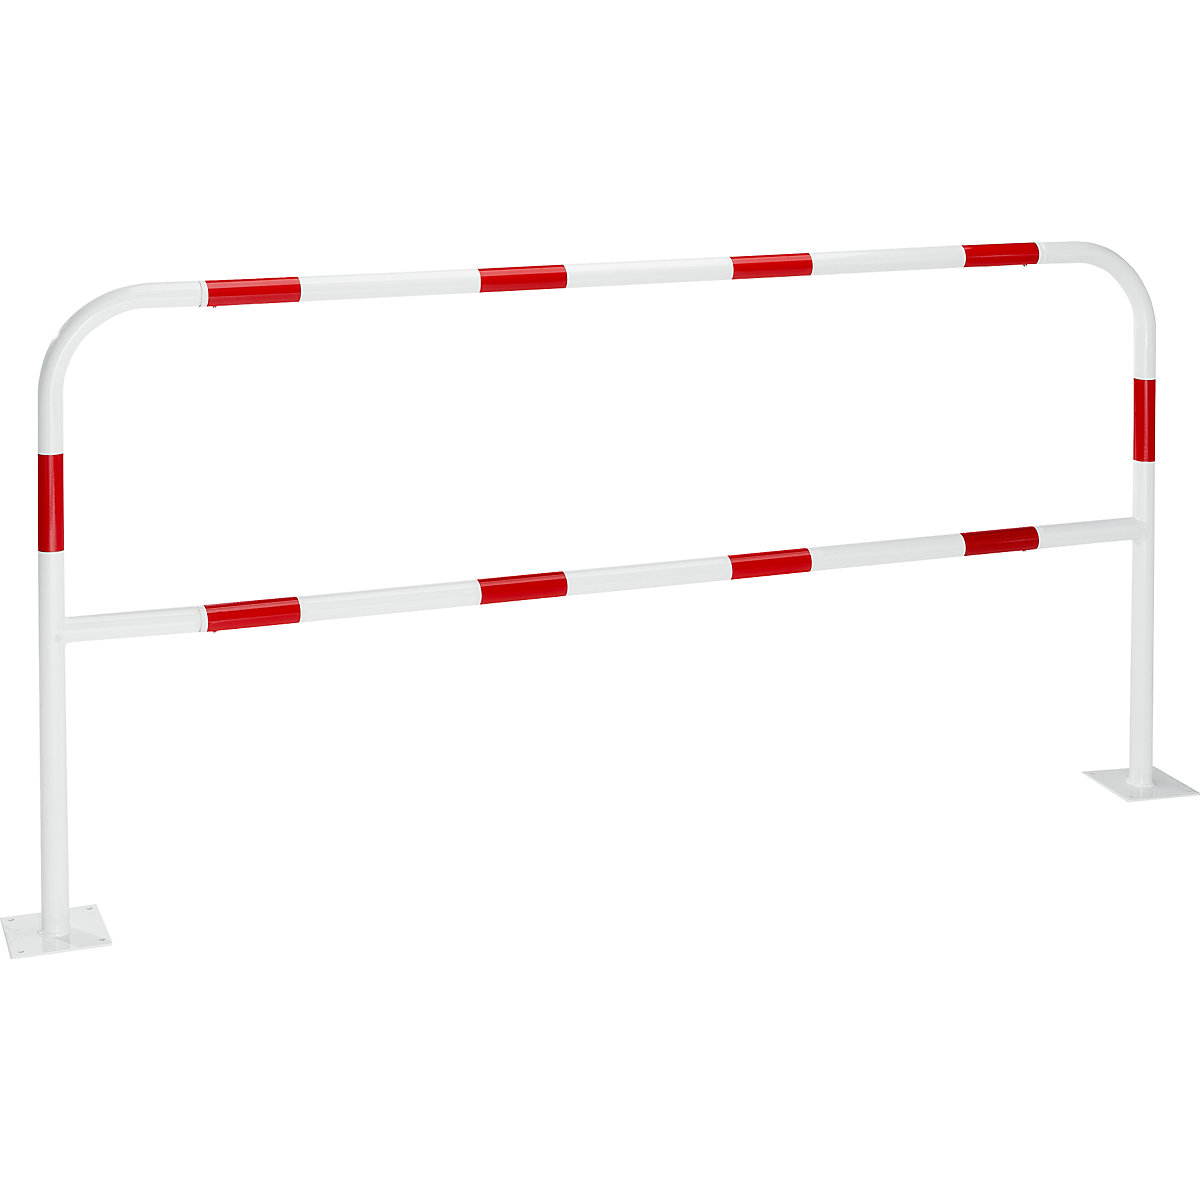 Arco de segurança para zonas de perigo, para fixar por buchas, vermelho / branco, largura 2000 mm-10